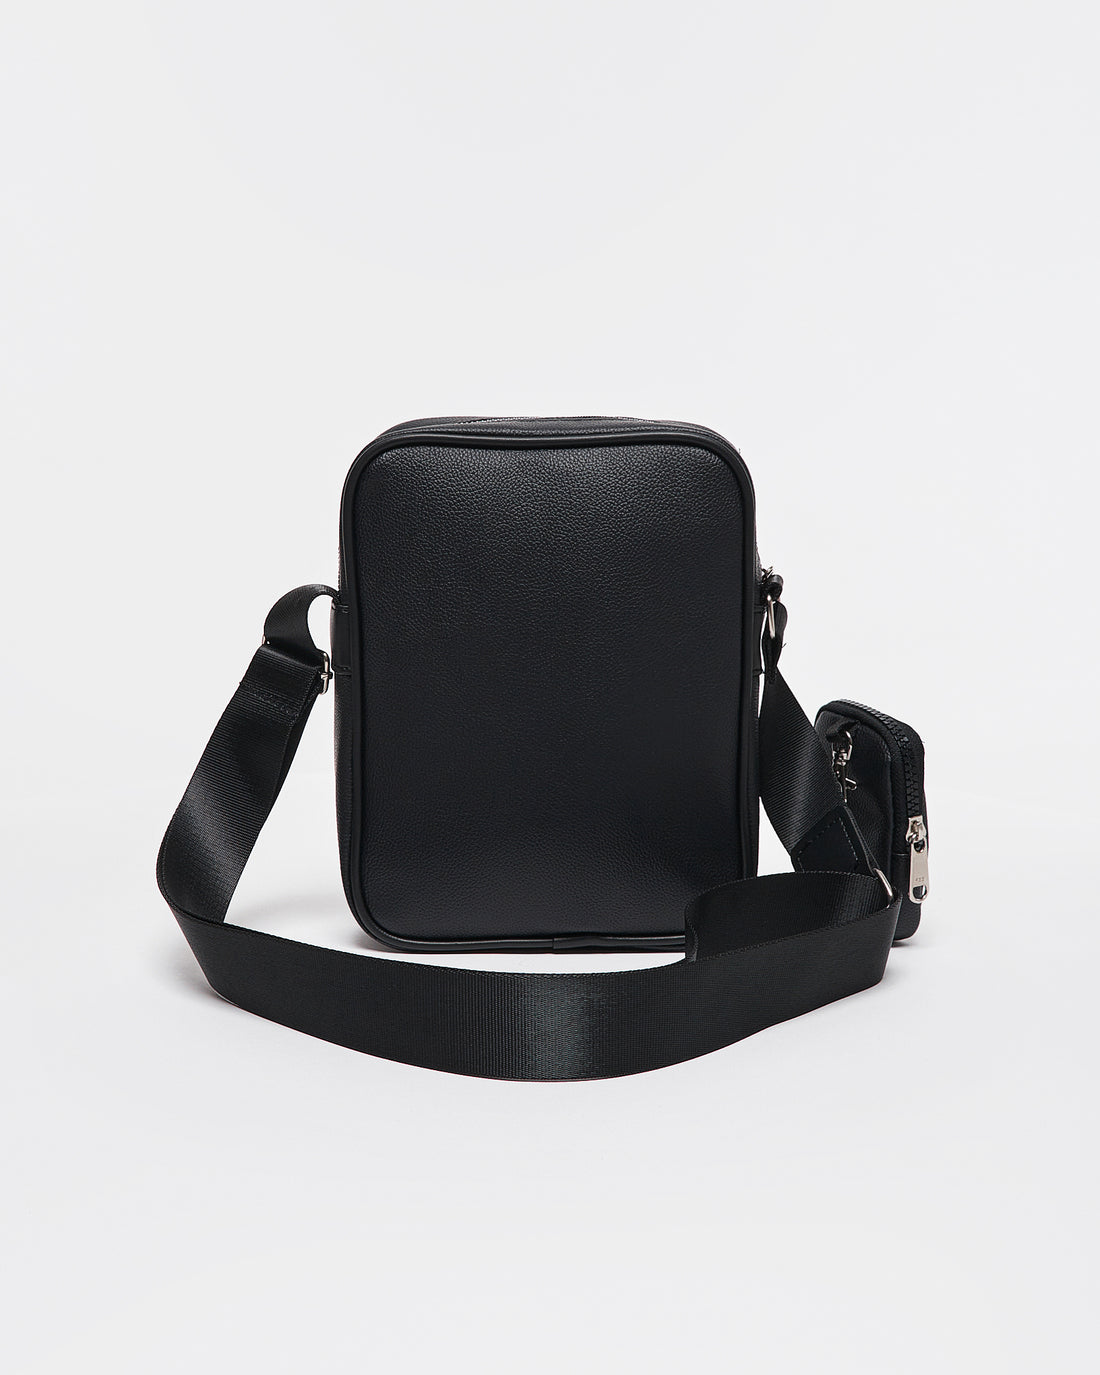 PRA Duo Black Sling Bag 17.90